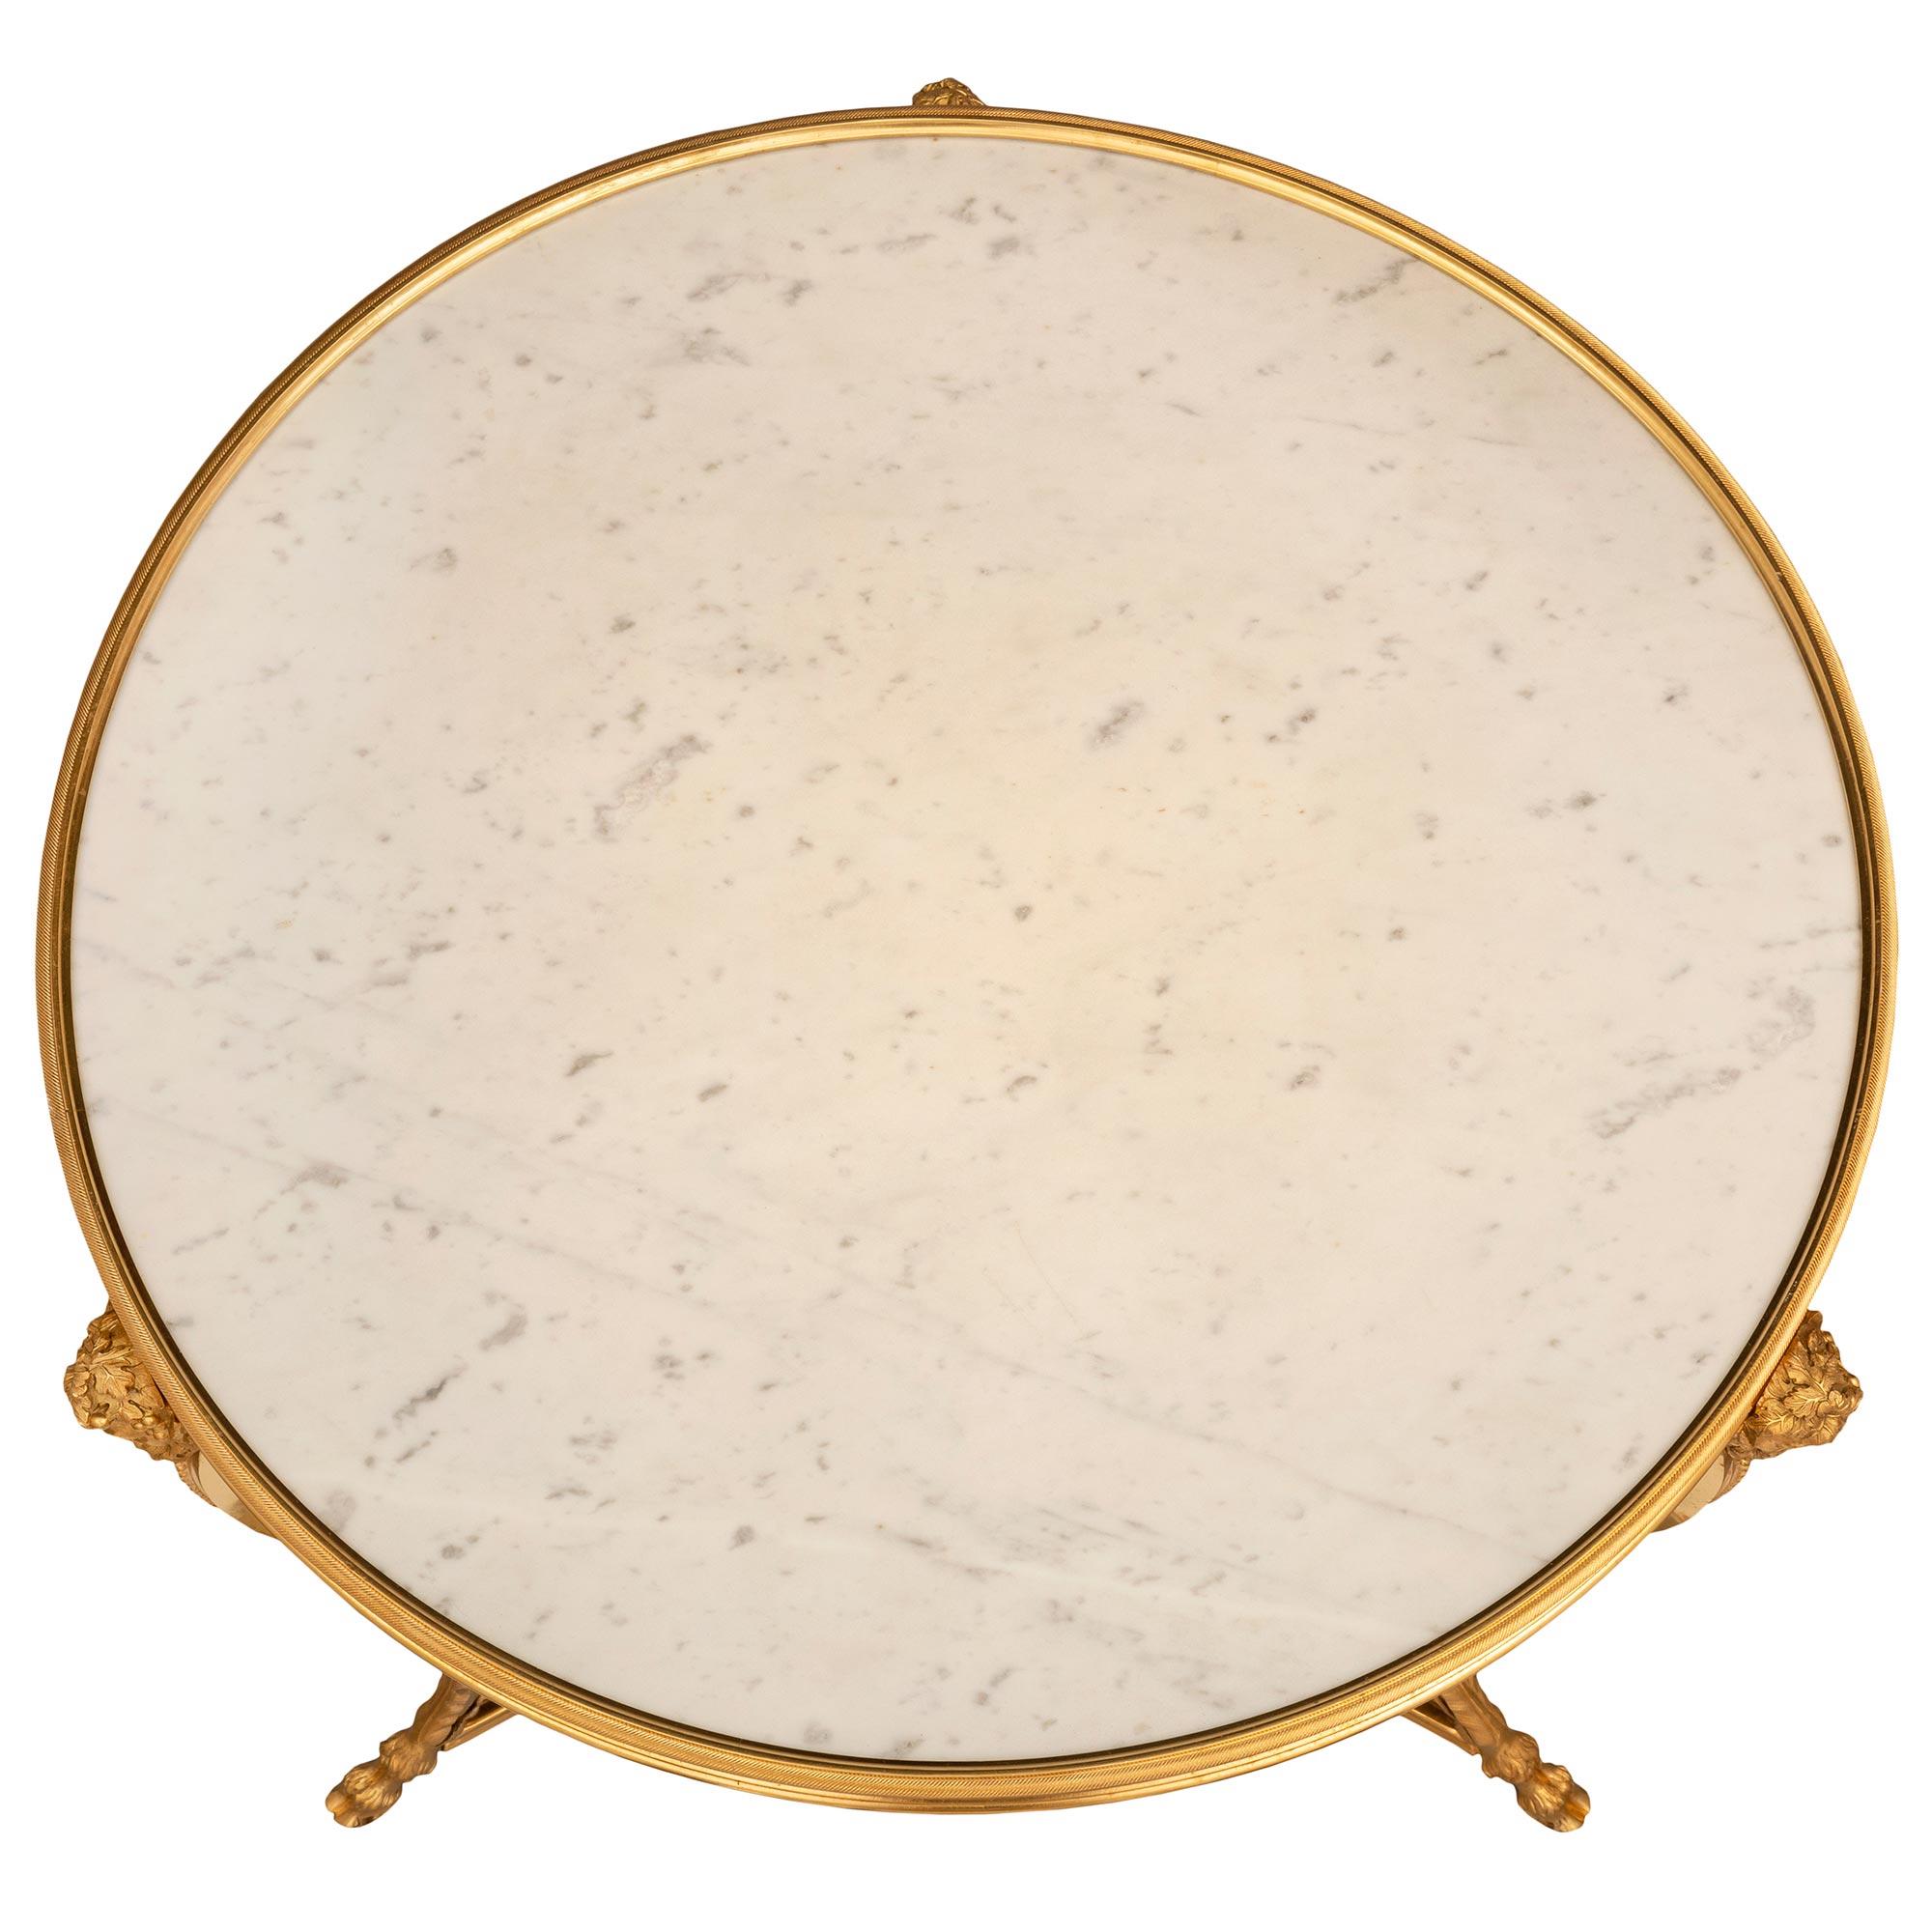 Ein sehr eleganter und hochwertiger französischer Beistelltisch aus dem 19. Jahrhundert aus Louis XVI-Ormolu und weißem Carrara-Marmor Guéridon. Der runde Tisch steht auf schönen, fein detaillierten Ormolu-Huffüßen mit großen Akanthusblättern und